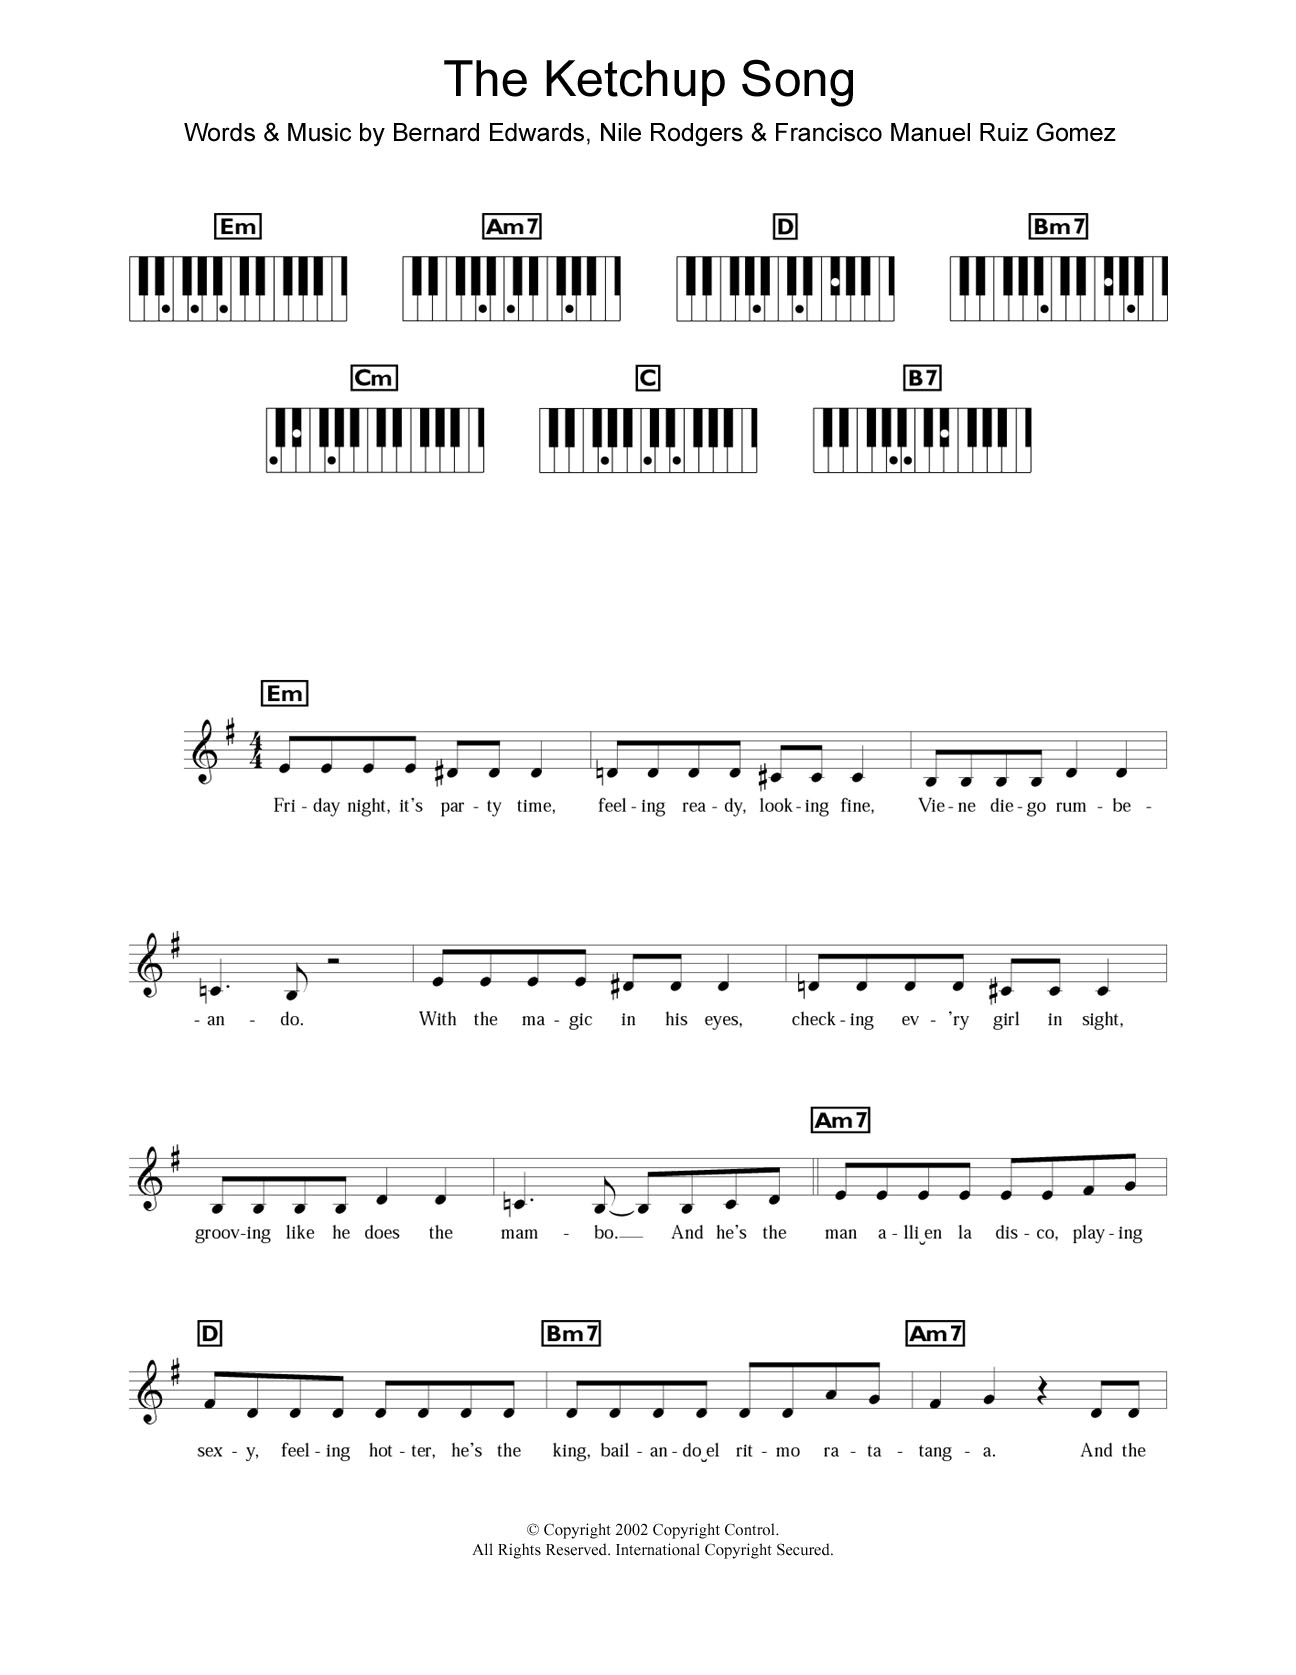 Las Ketchup The Ketchup Song (Asereje) Sheet Music Notes & Chords for Piano Chords/Lyrics - Download or Print PDF